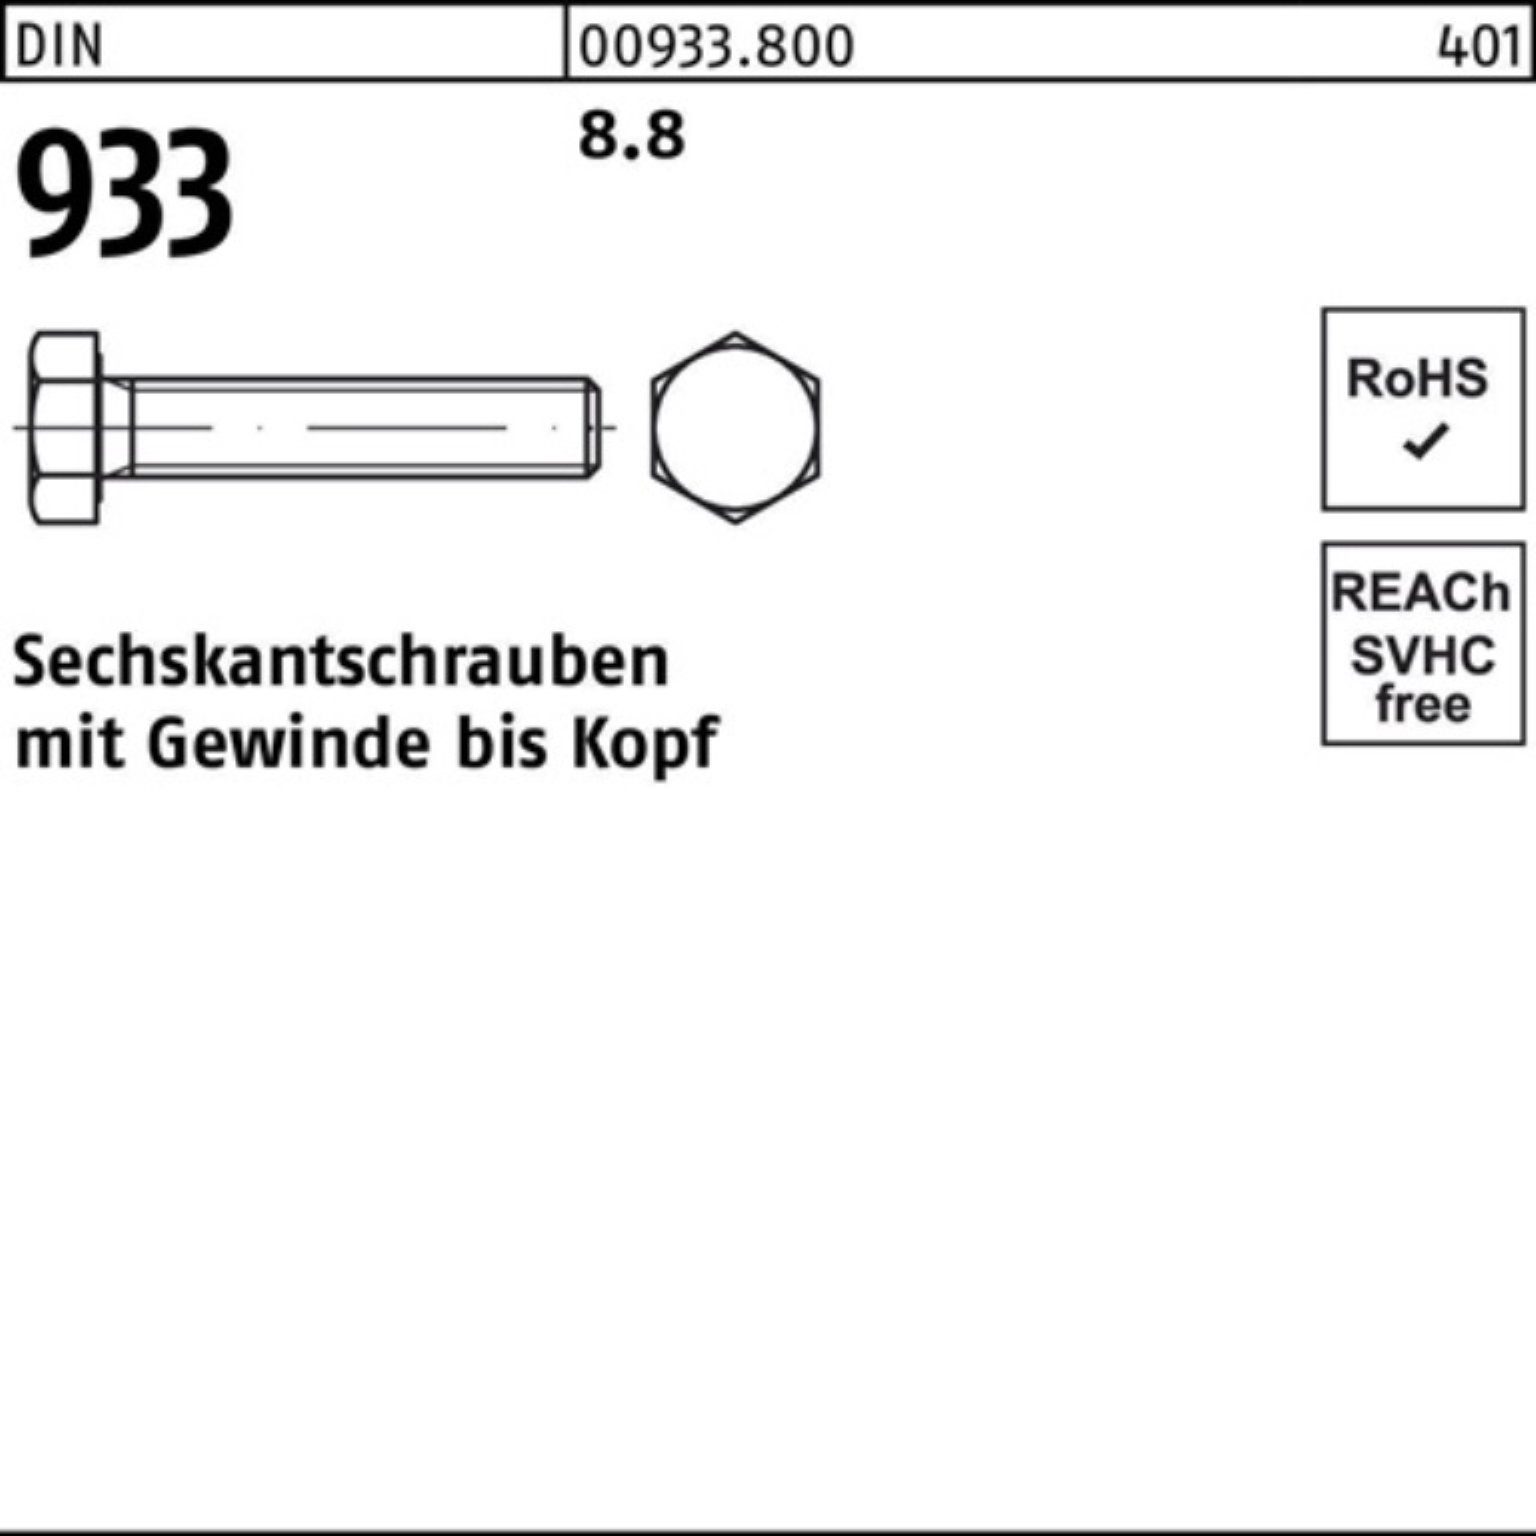 DIN DIN Sechskantschraube M36x Sechskantschraube 8.8 VG 100er 933 933 Stück 1 170 Pack Reyher